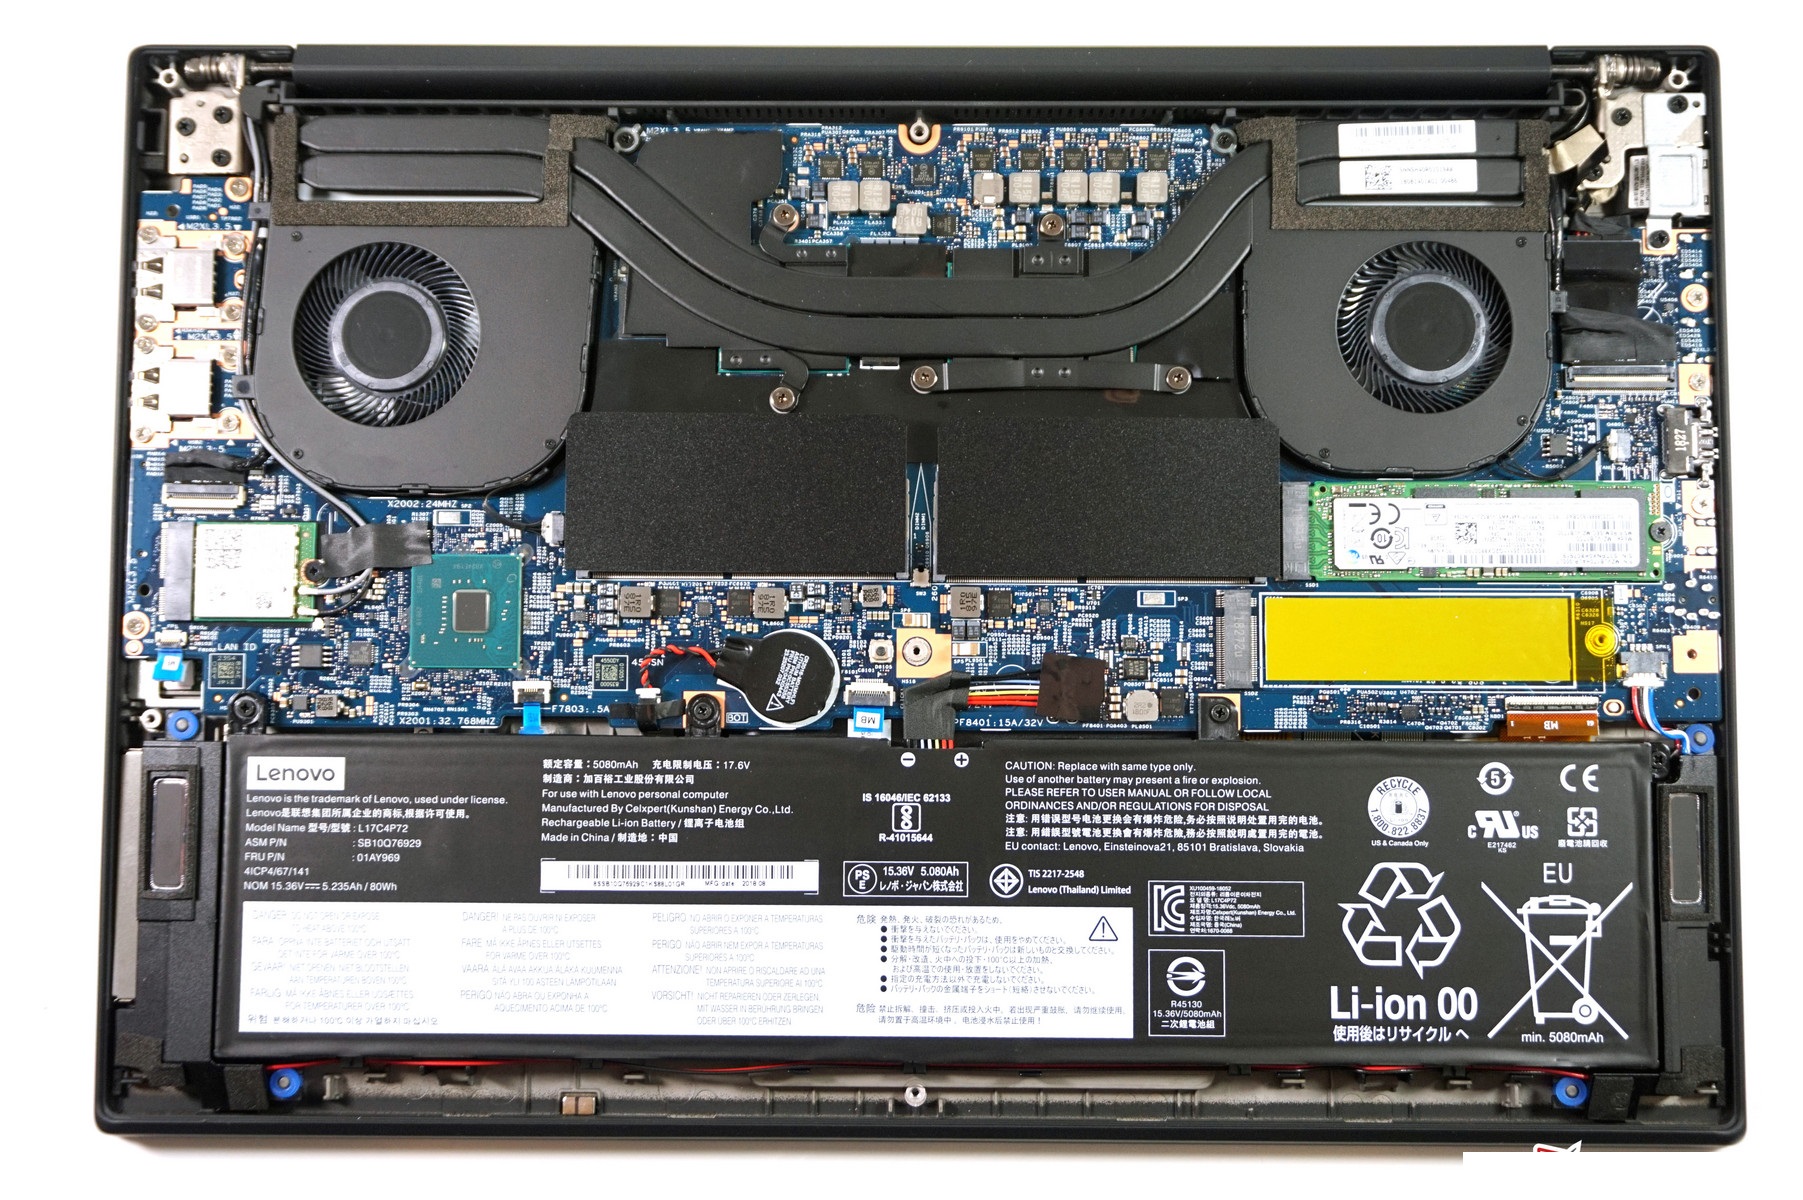 Đánh giá Lenovo ThinkPad X1 Extreme Gen 1: Rất đa năng !, trang web tư vấn về máy tính xách tay